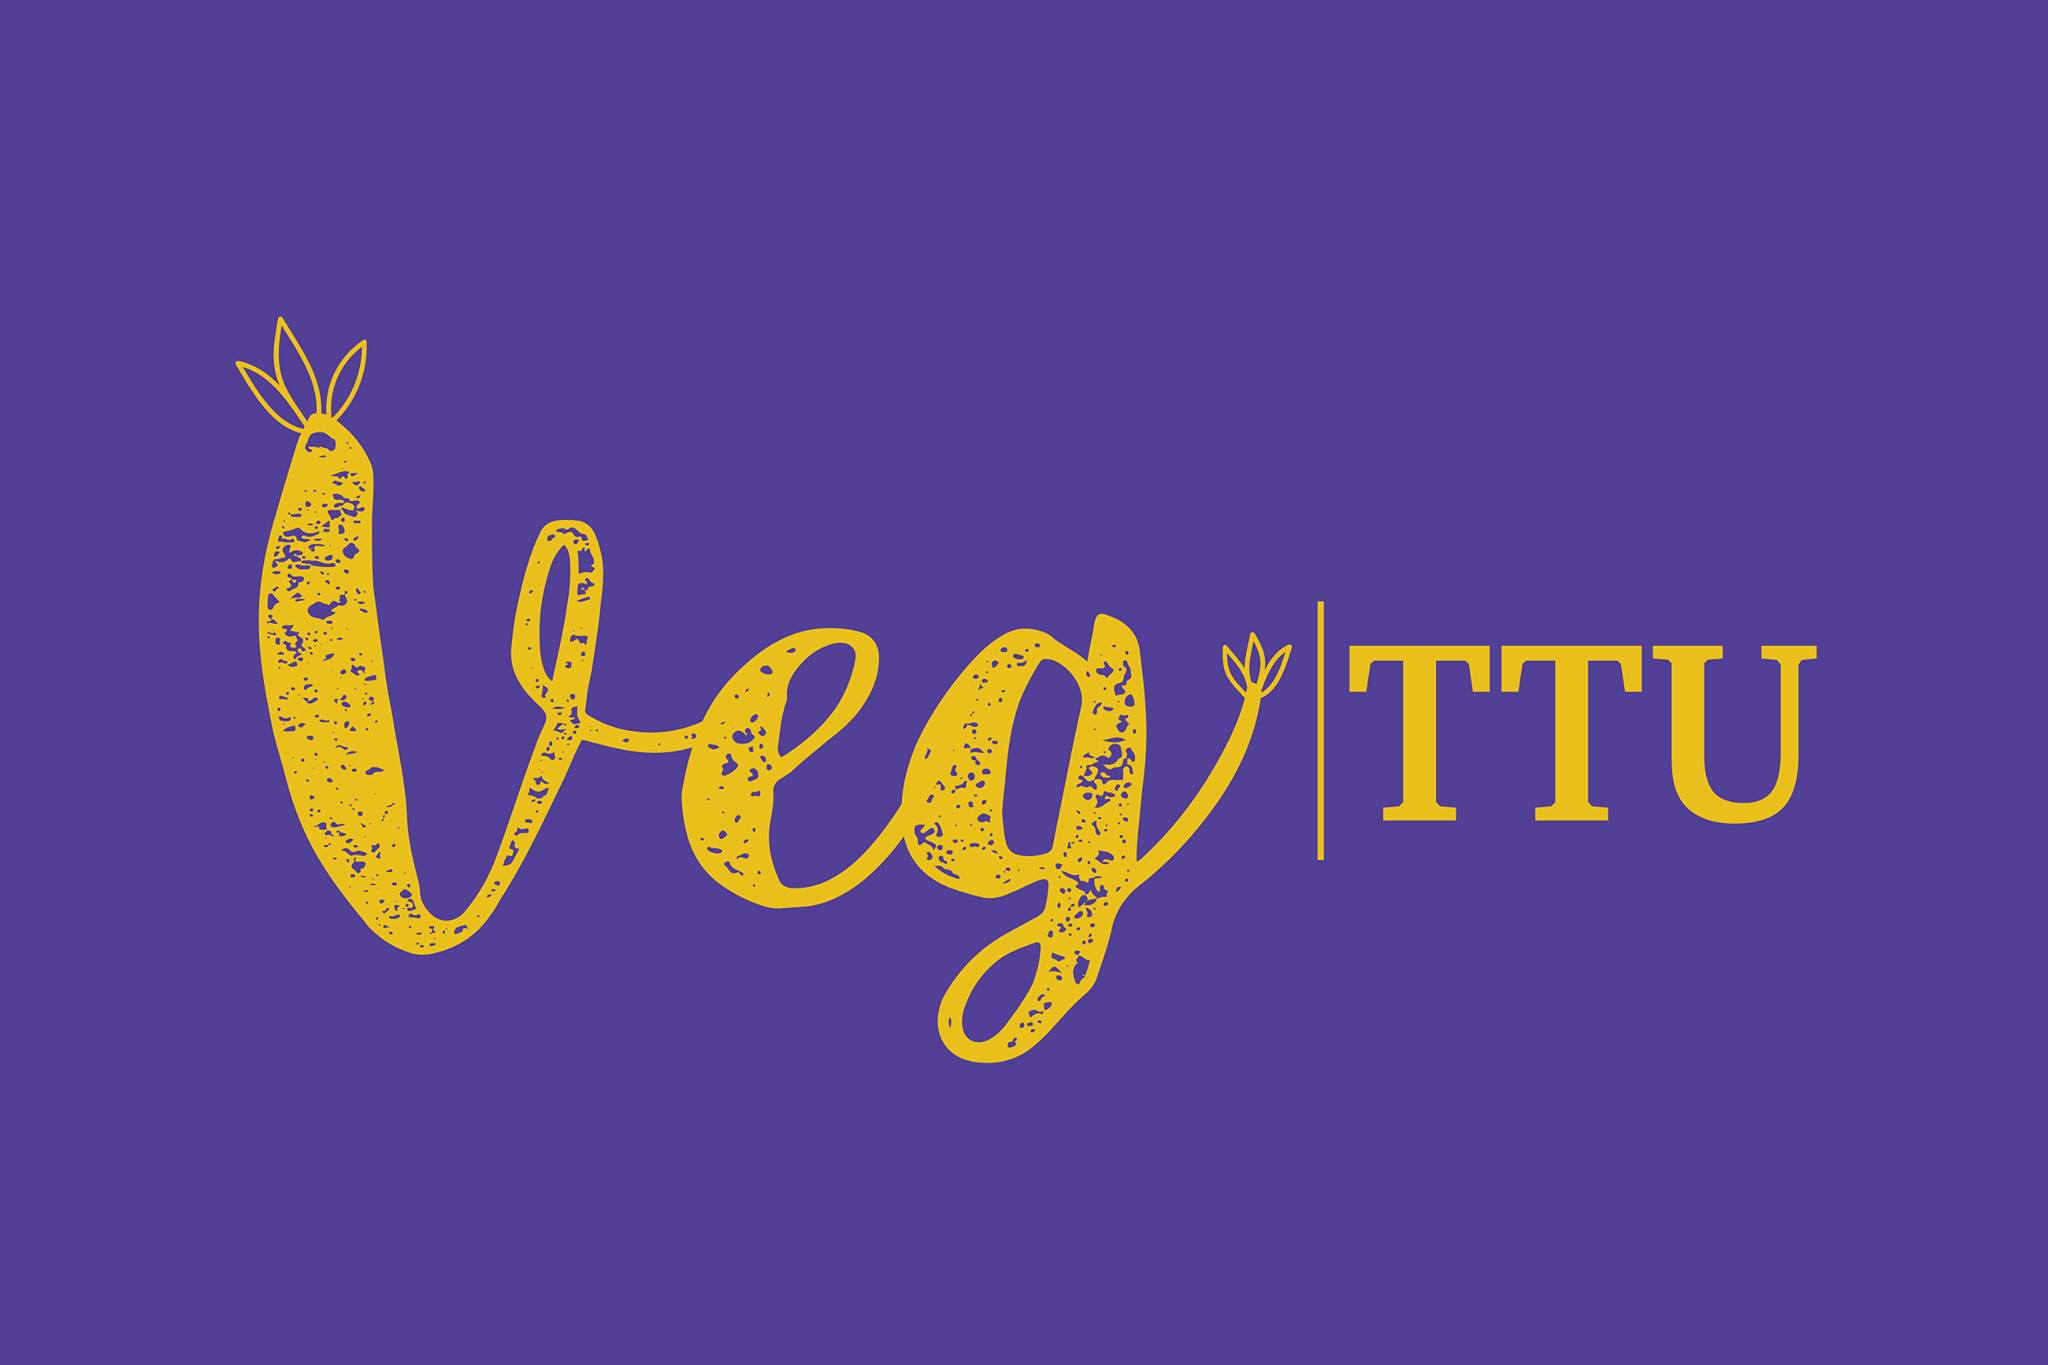 VegTTU logo